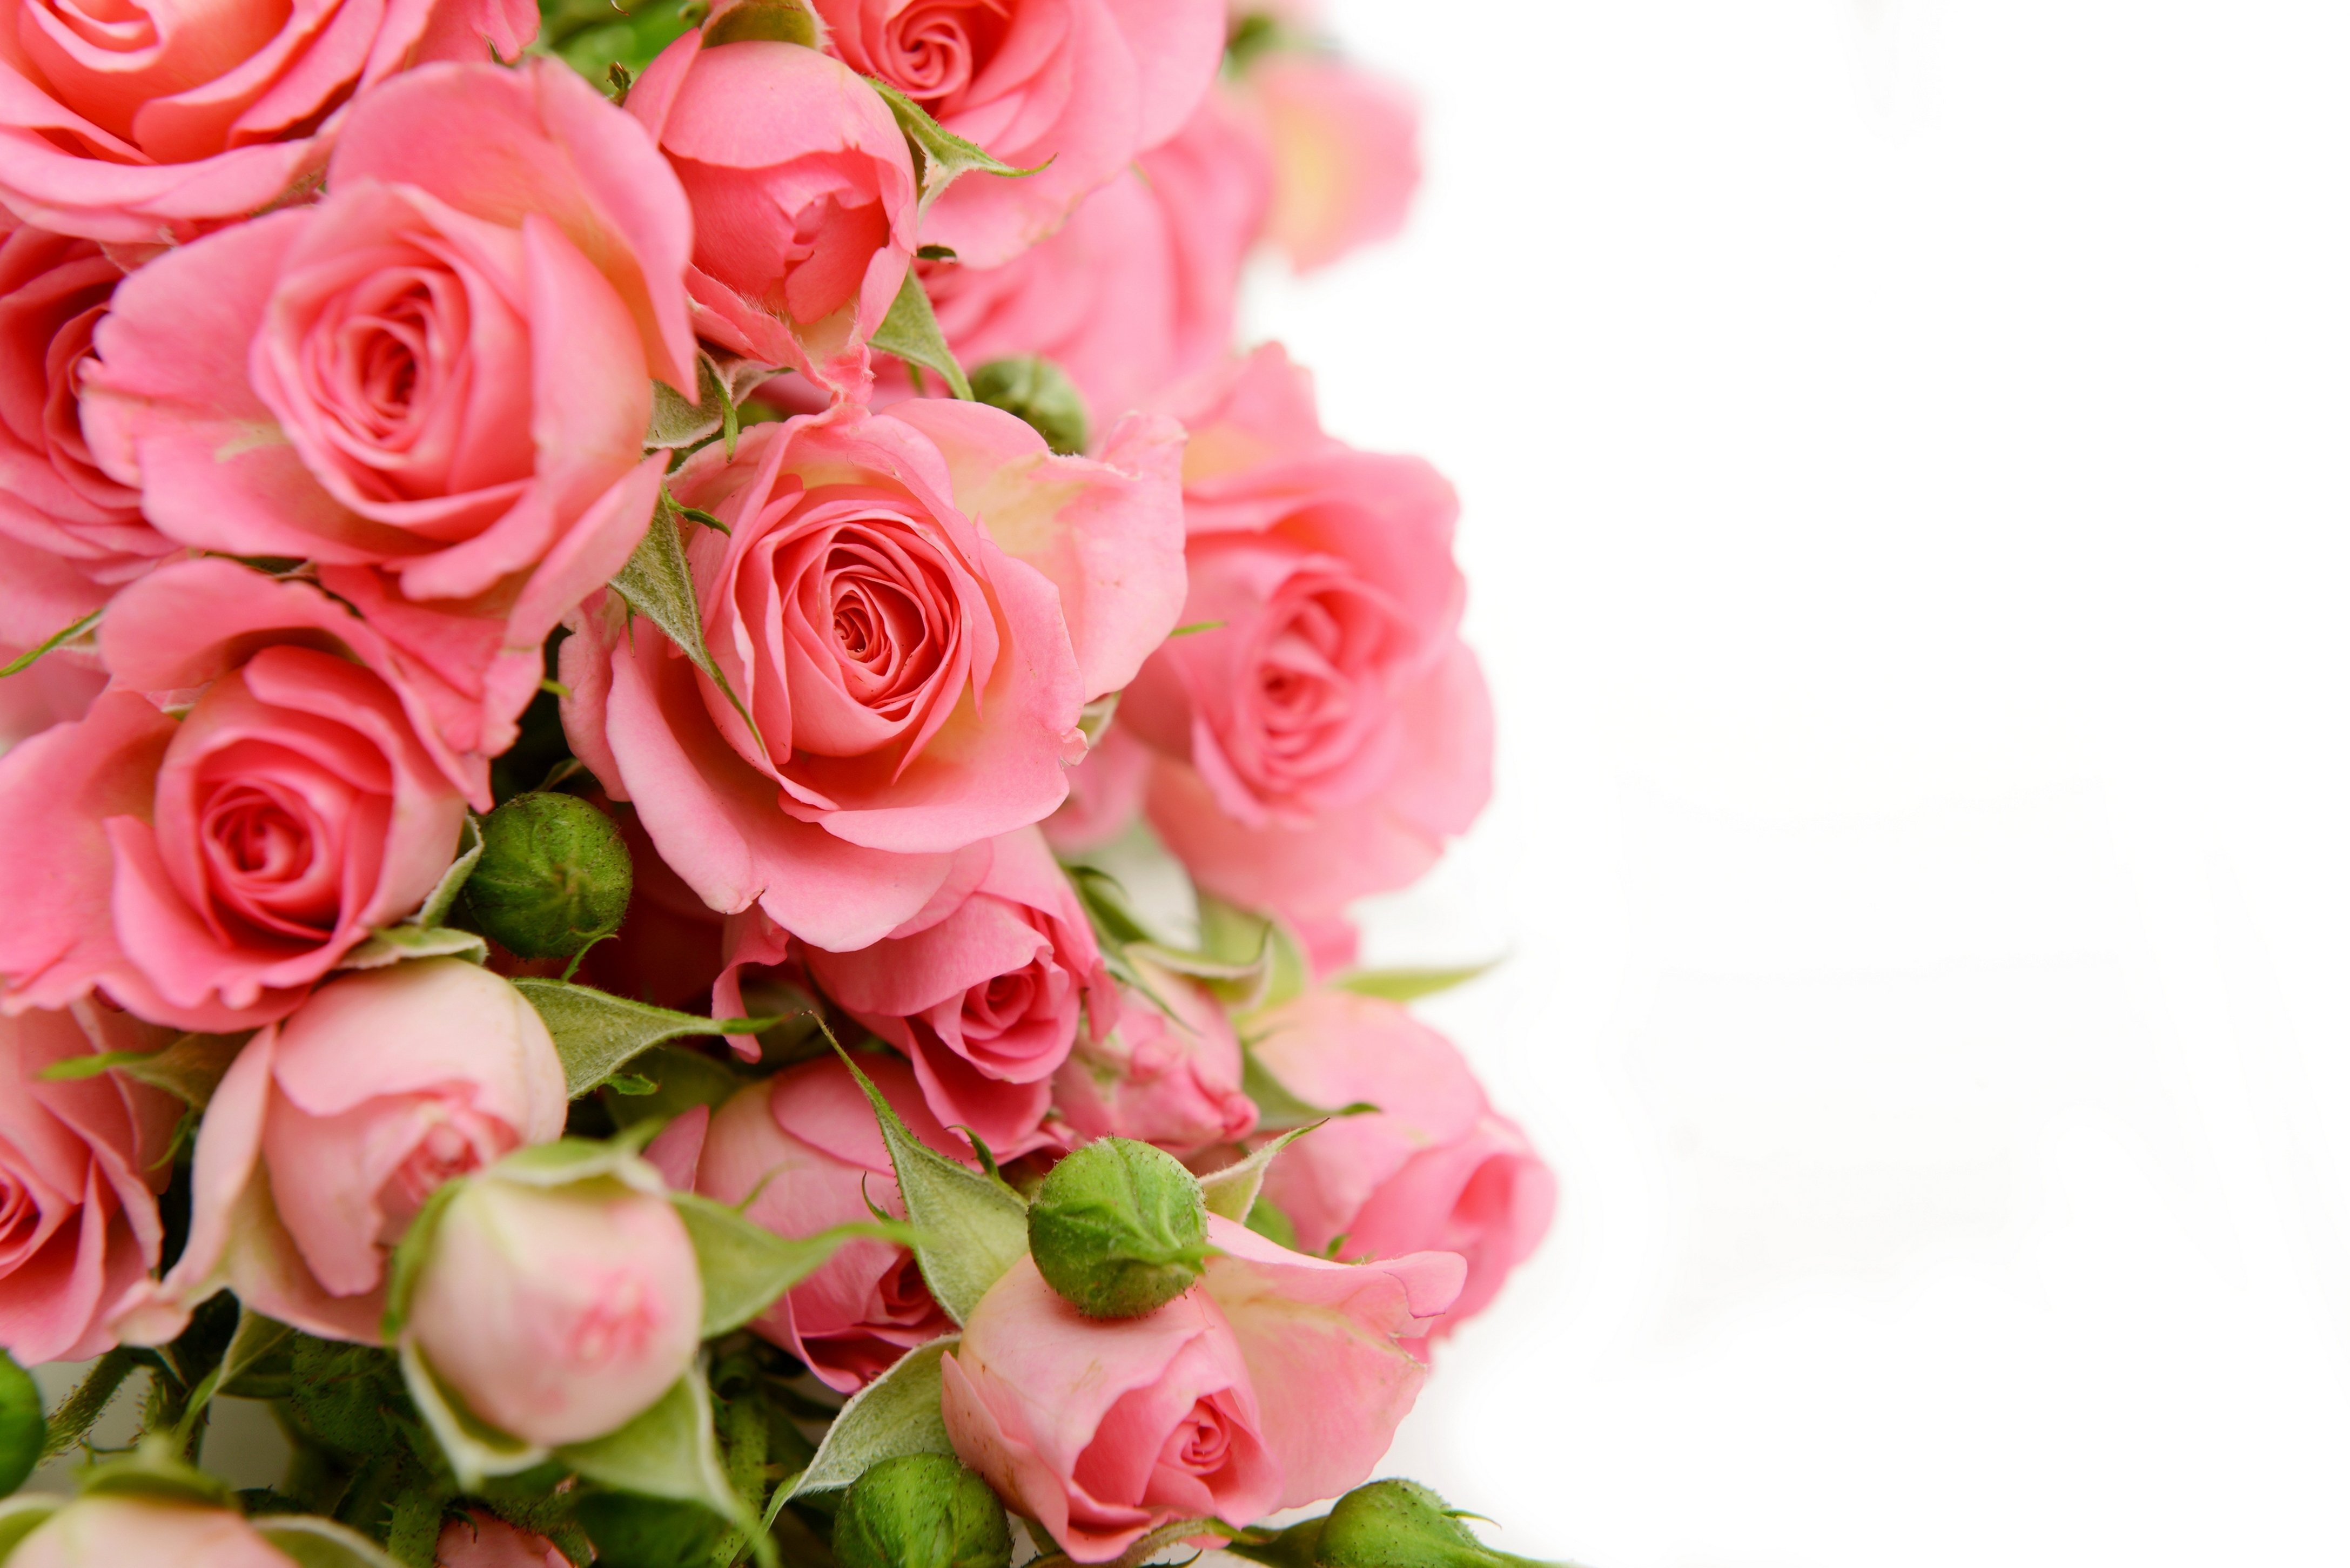 Поздравление женщине без слов. Розовые розы фон. Поздравляю! (Цветок). Поздравление с юбилеем женщине. Открытка "букет".